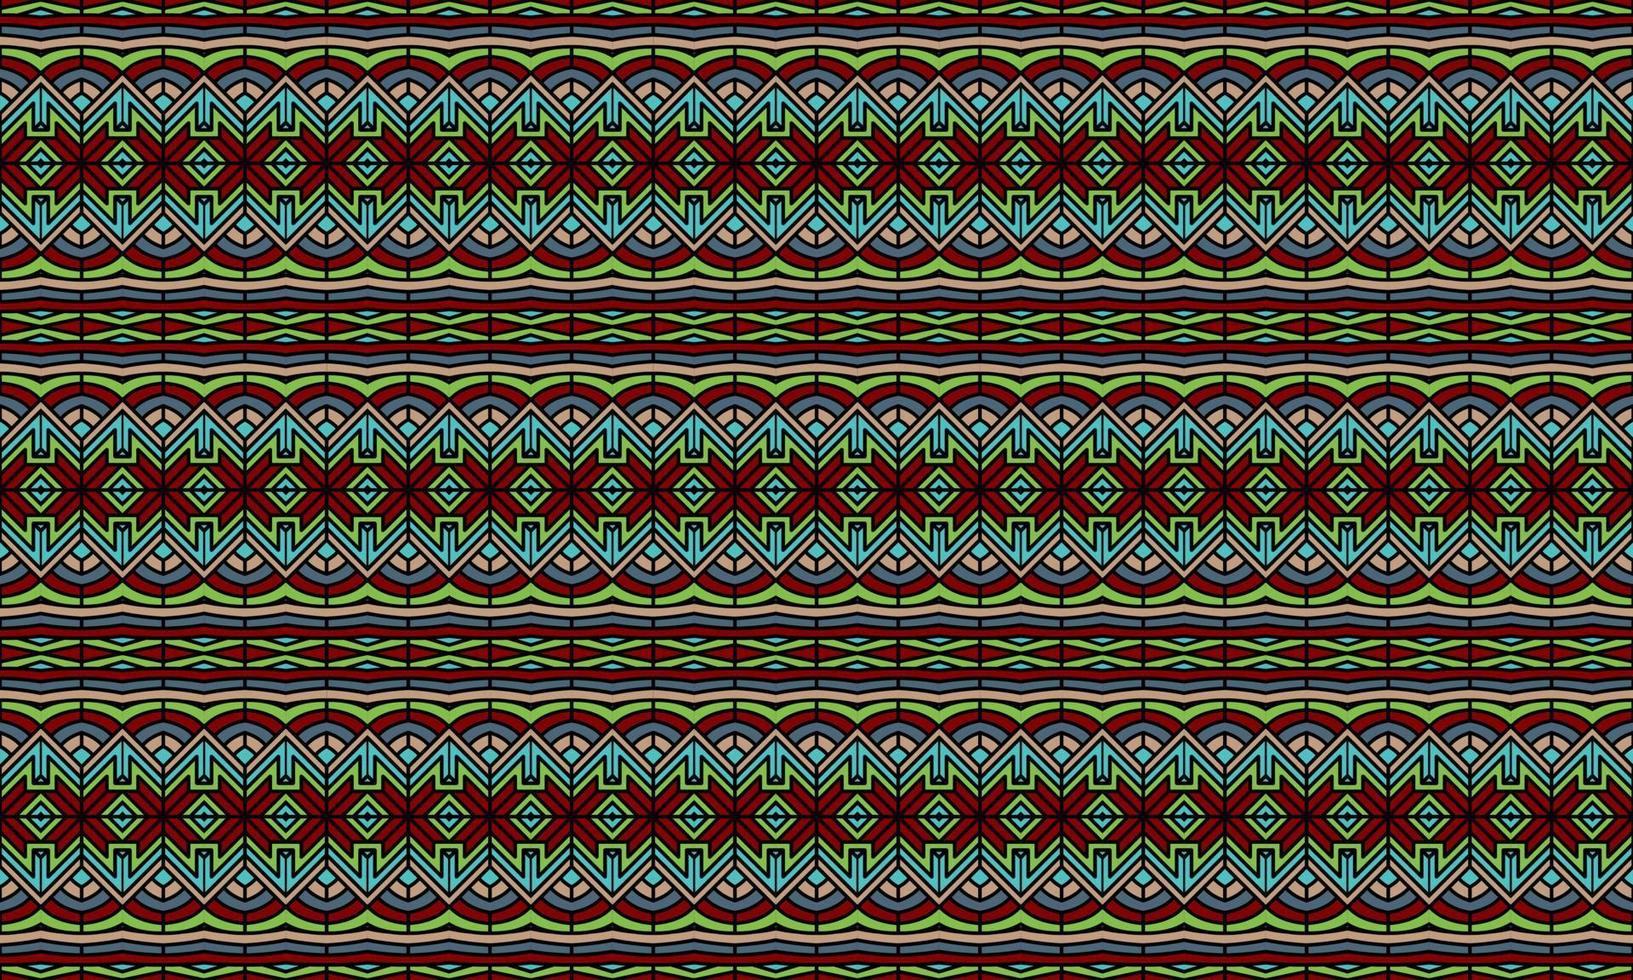 fondo de patrón étnico batik moderno elegante vector